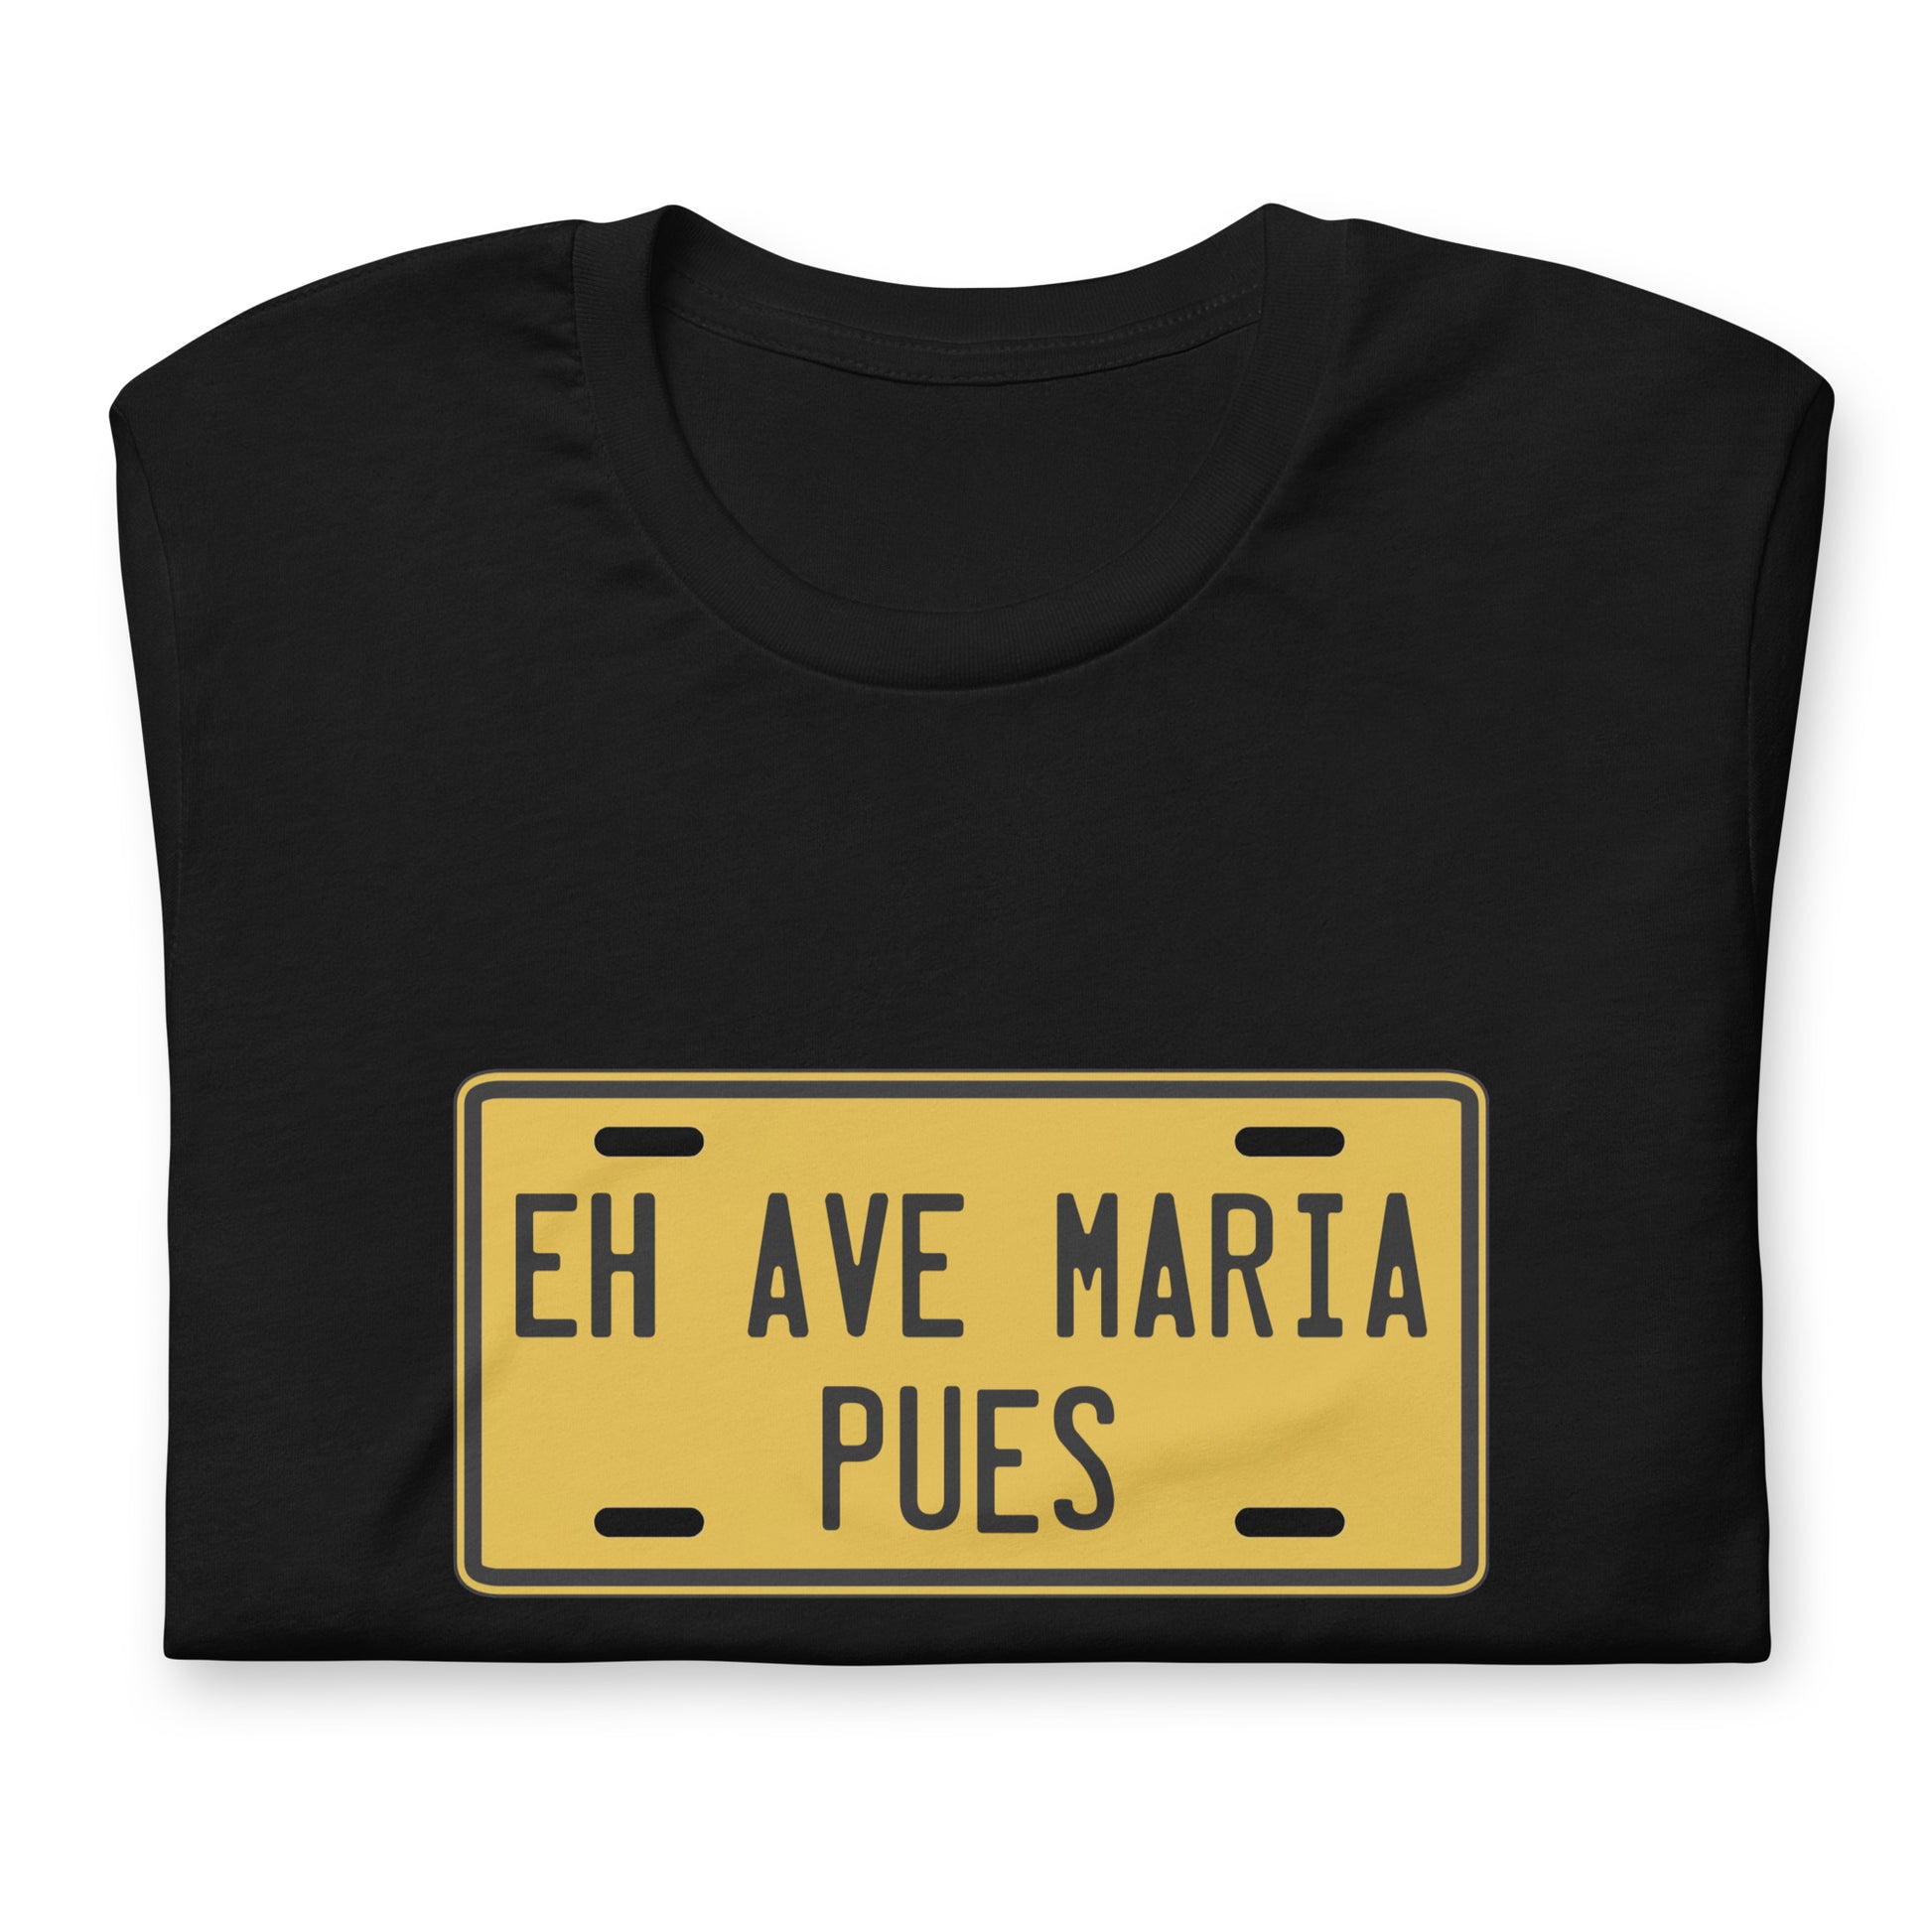 Muestra tu orgullo colombiano con la Camiseta Placa Eh Ave Maria Pues. Diseñada con los mejores materiales y un estampado duradero.